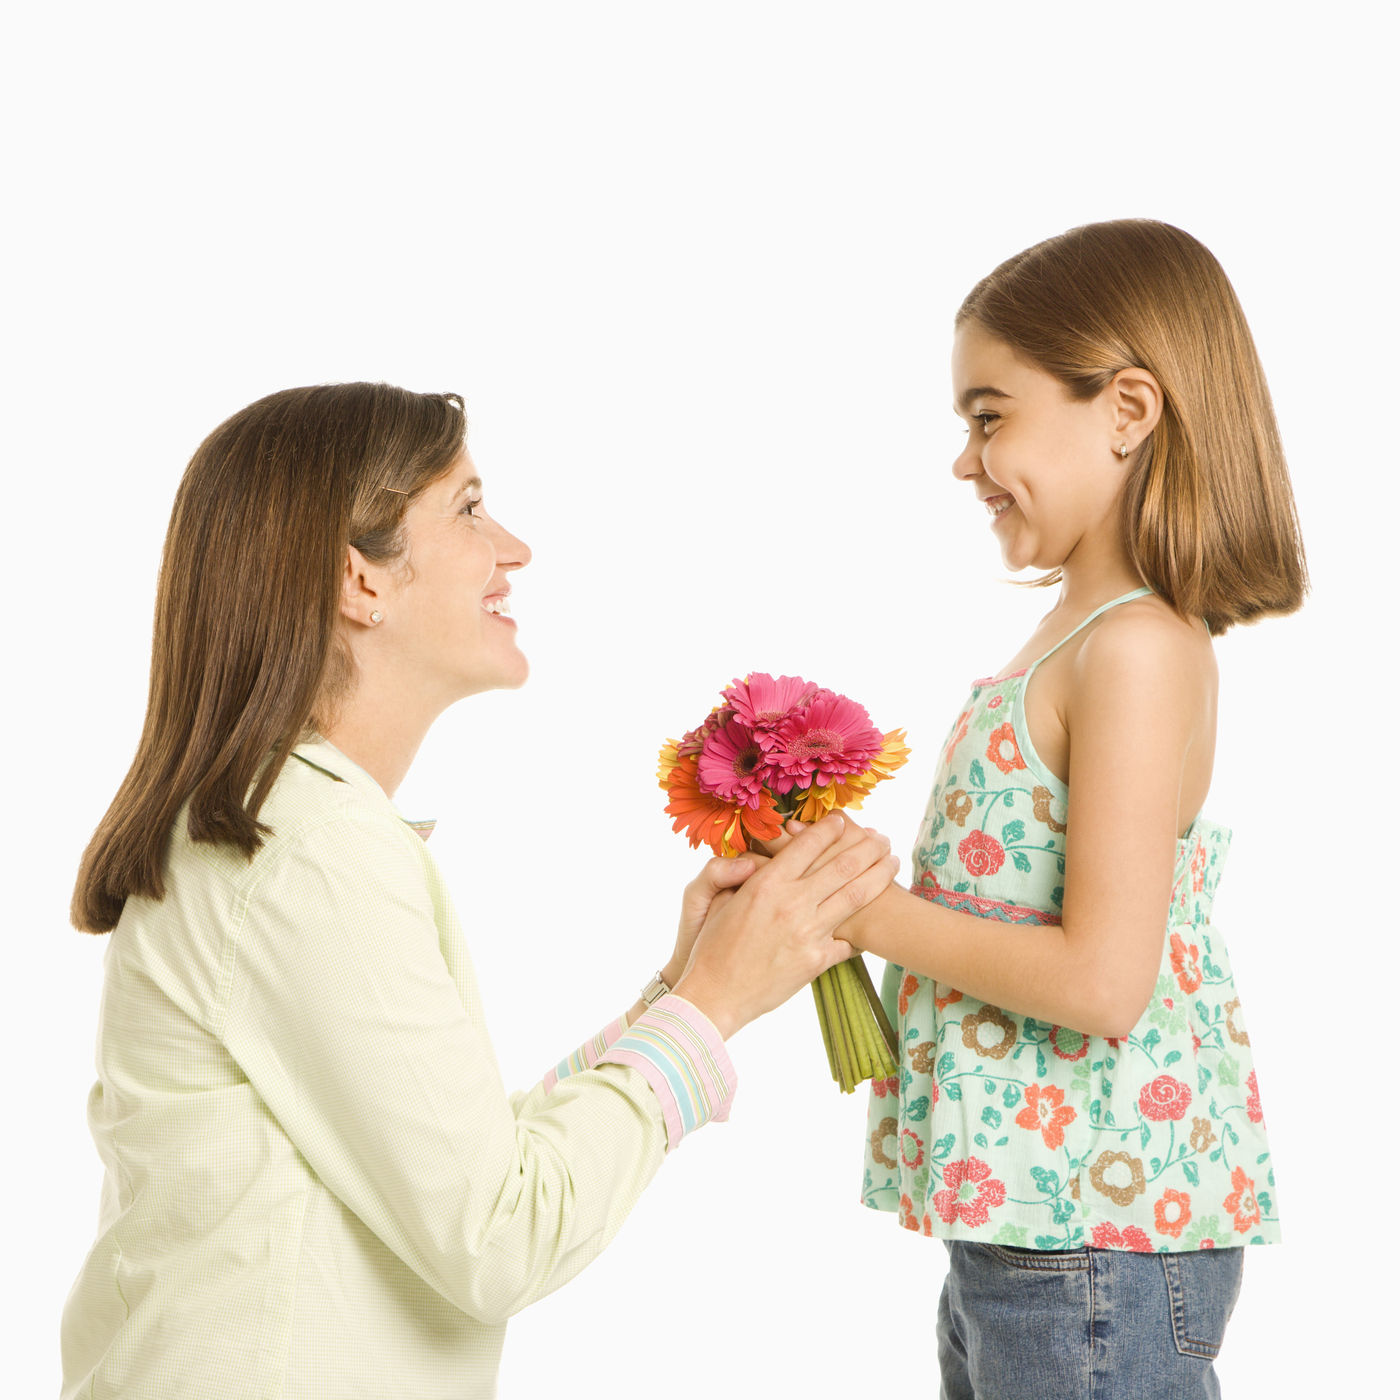 Подарить маме телефон. Мальчик дарит девочке цветы. Мальчик дарит цветы маме. Девочка дарит маме цветы. Ребенок дарит цветы маме.